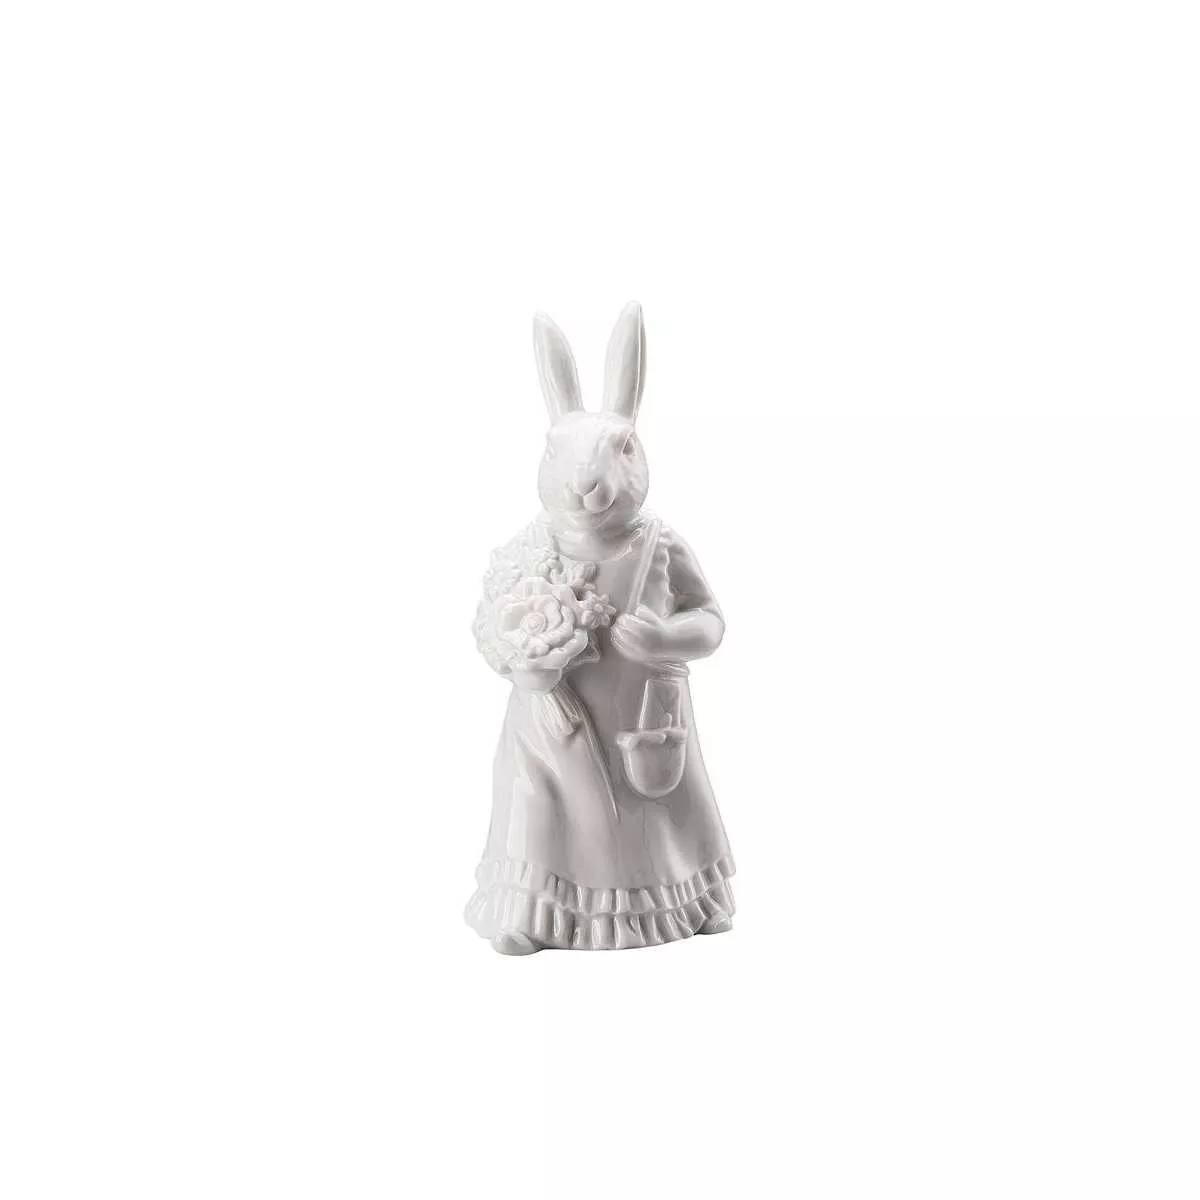 Статуэтка пасхальная «Леди кролик с корзиной» белая Hutschenreuther Hasenfiguren Weiss, высота 13,5 см (02350-800001-88840) - Фото nav 2